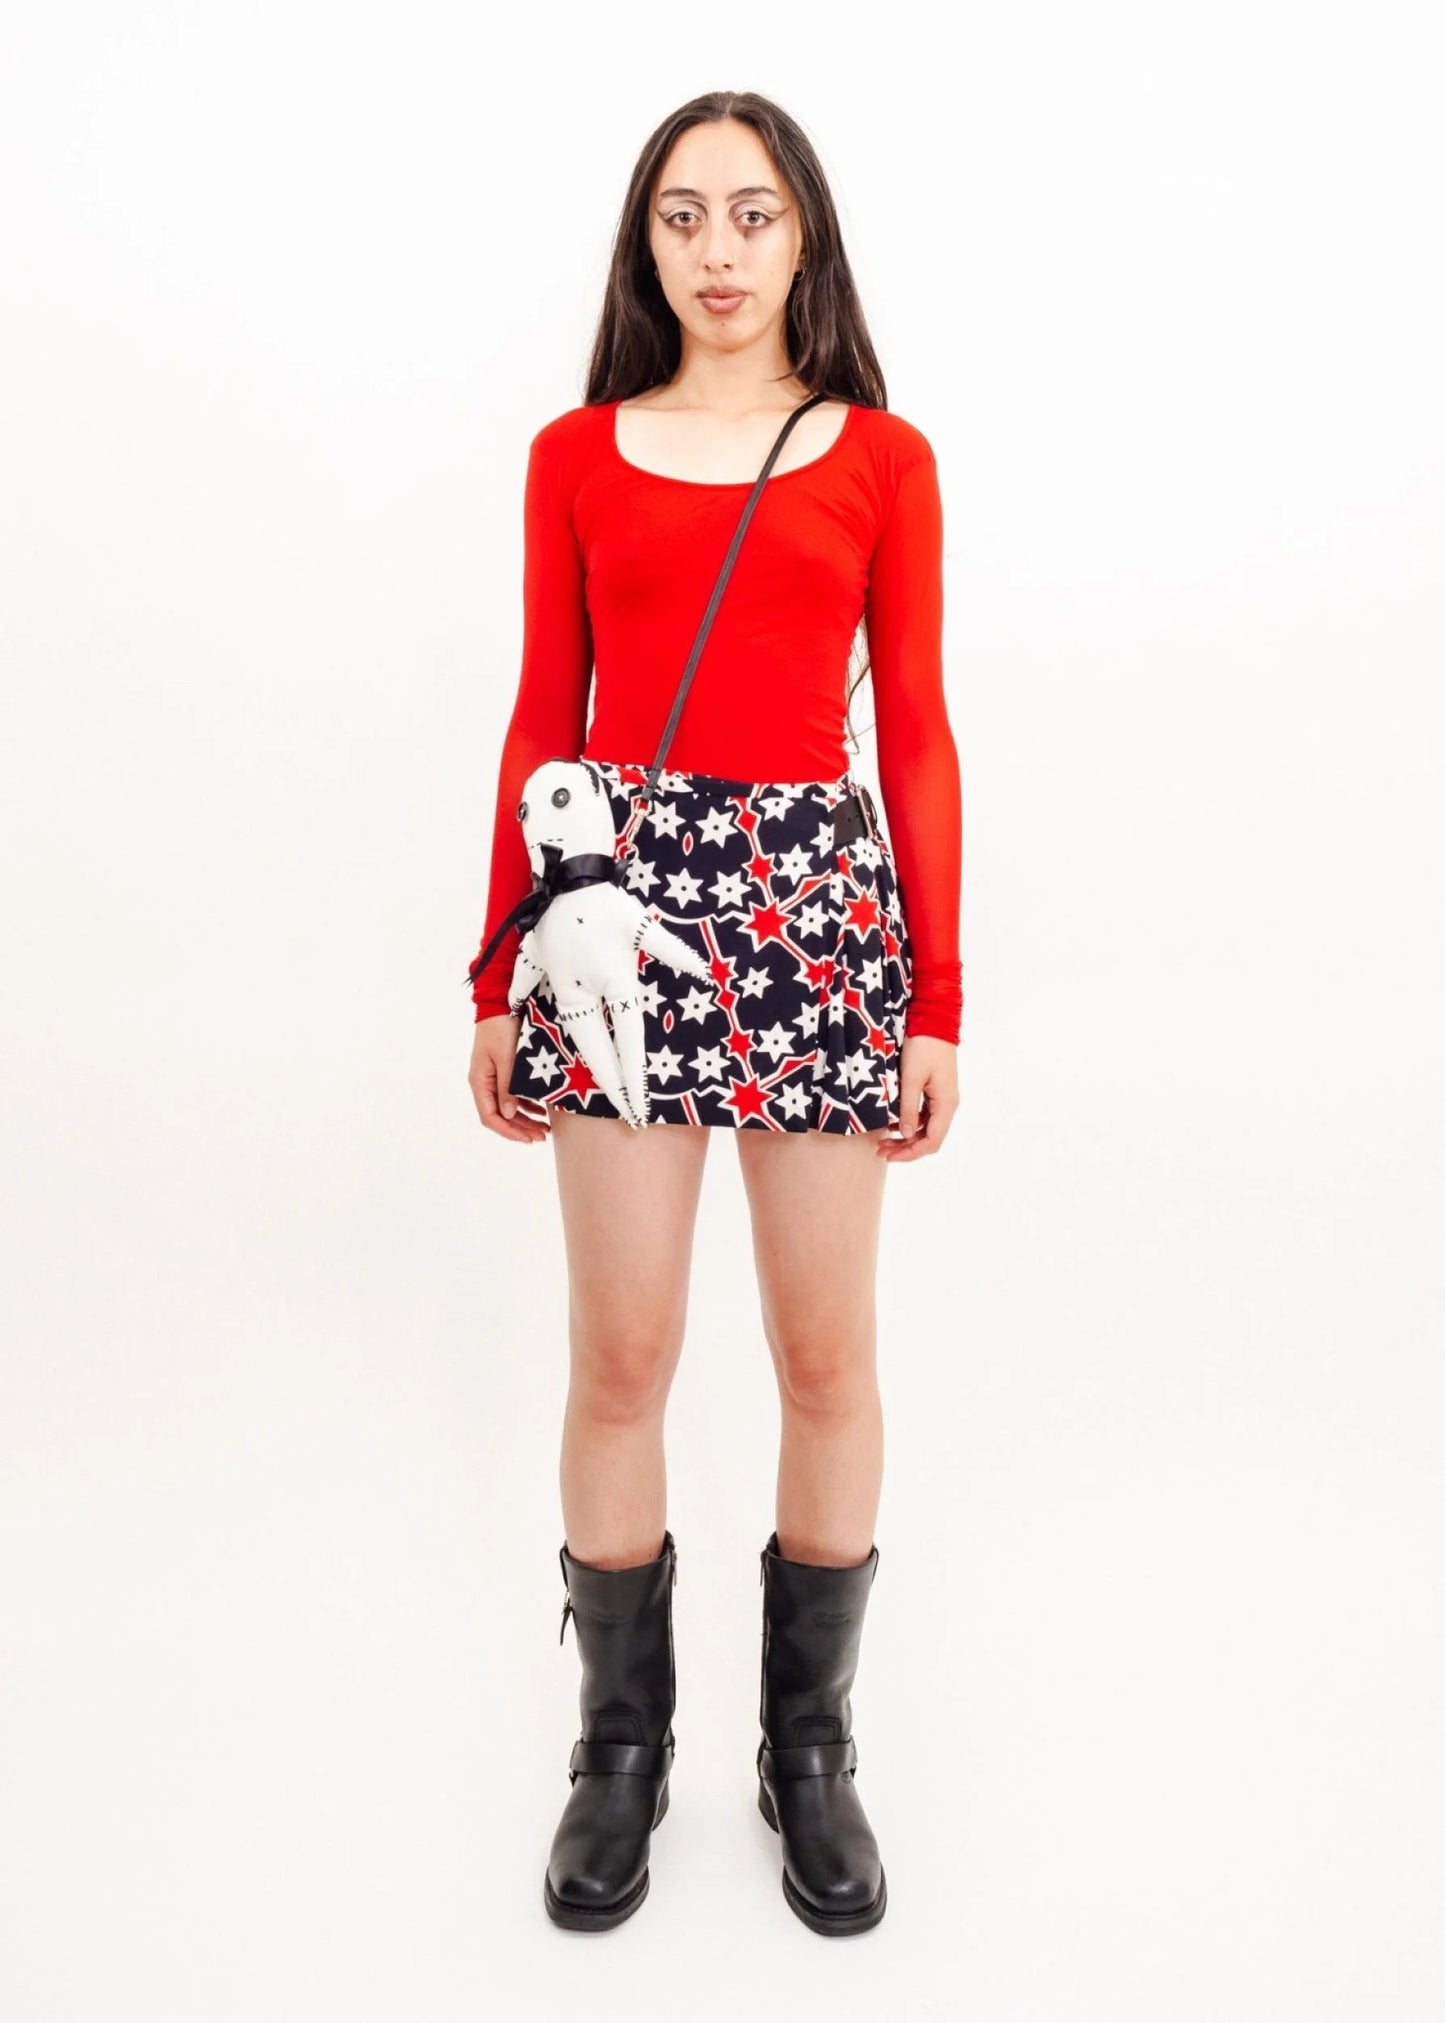 Miu Miu S/S 2011 Star Print Mini Skirt